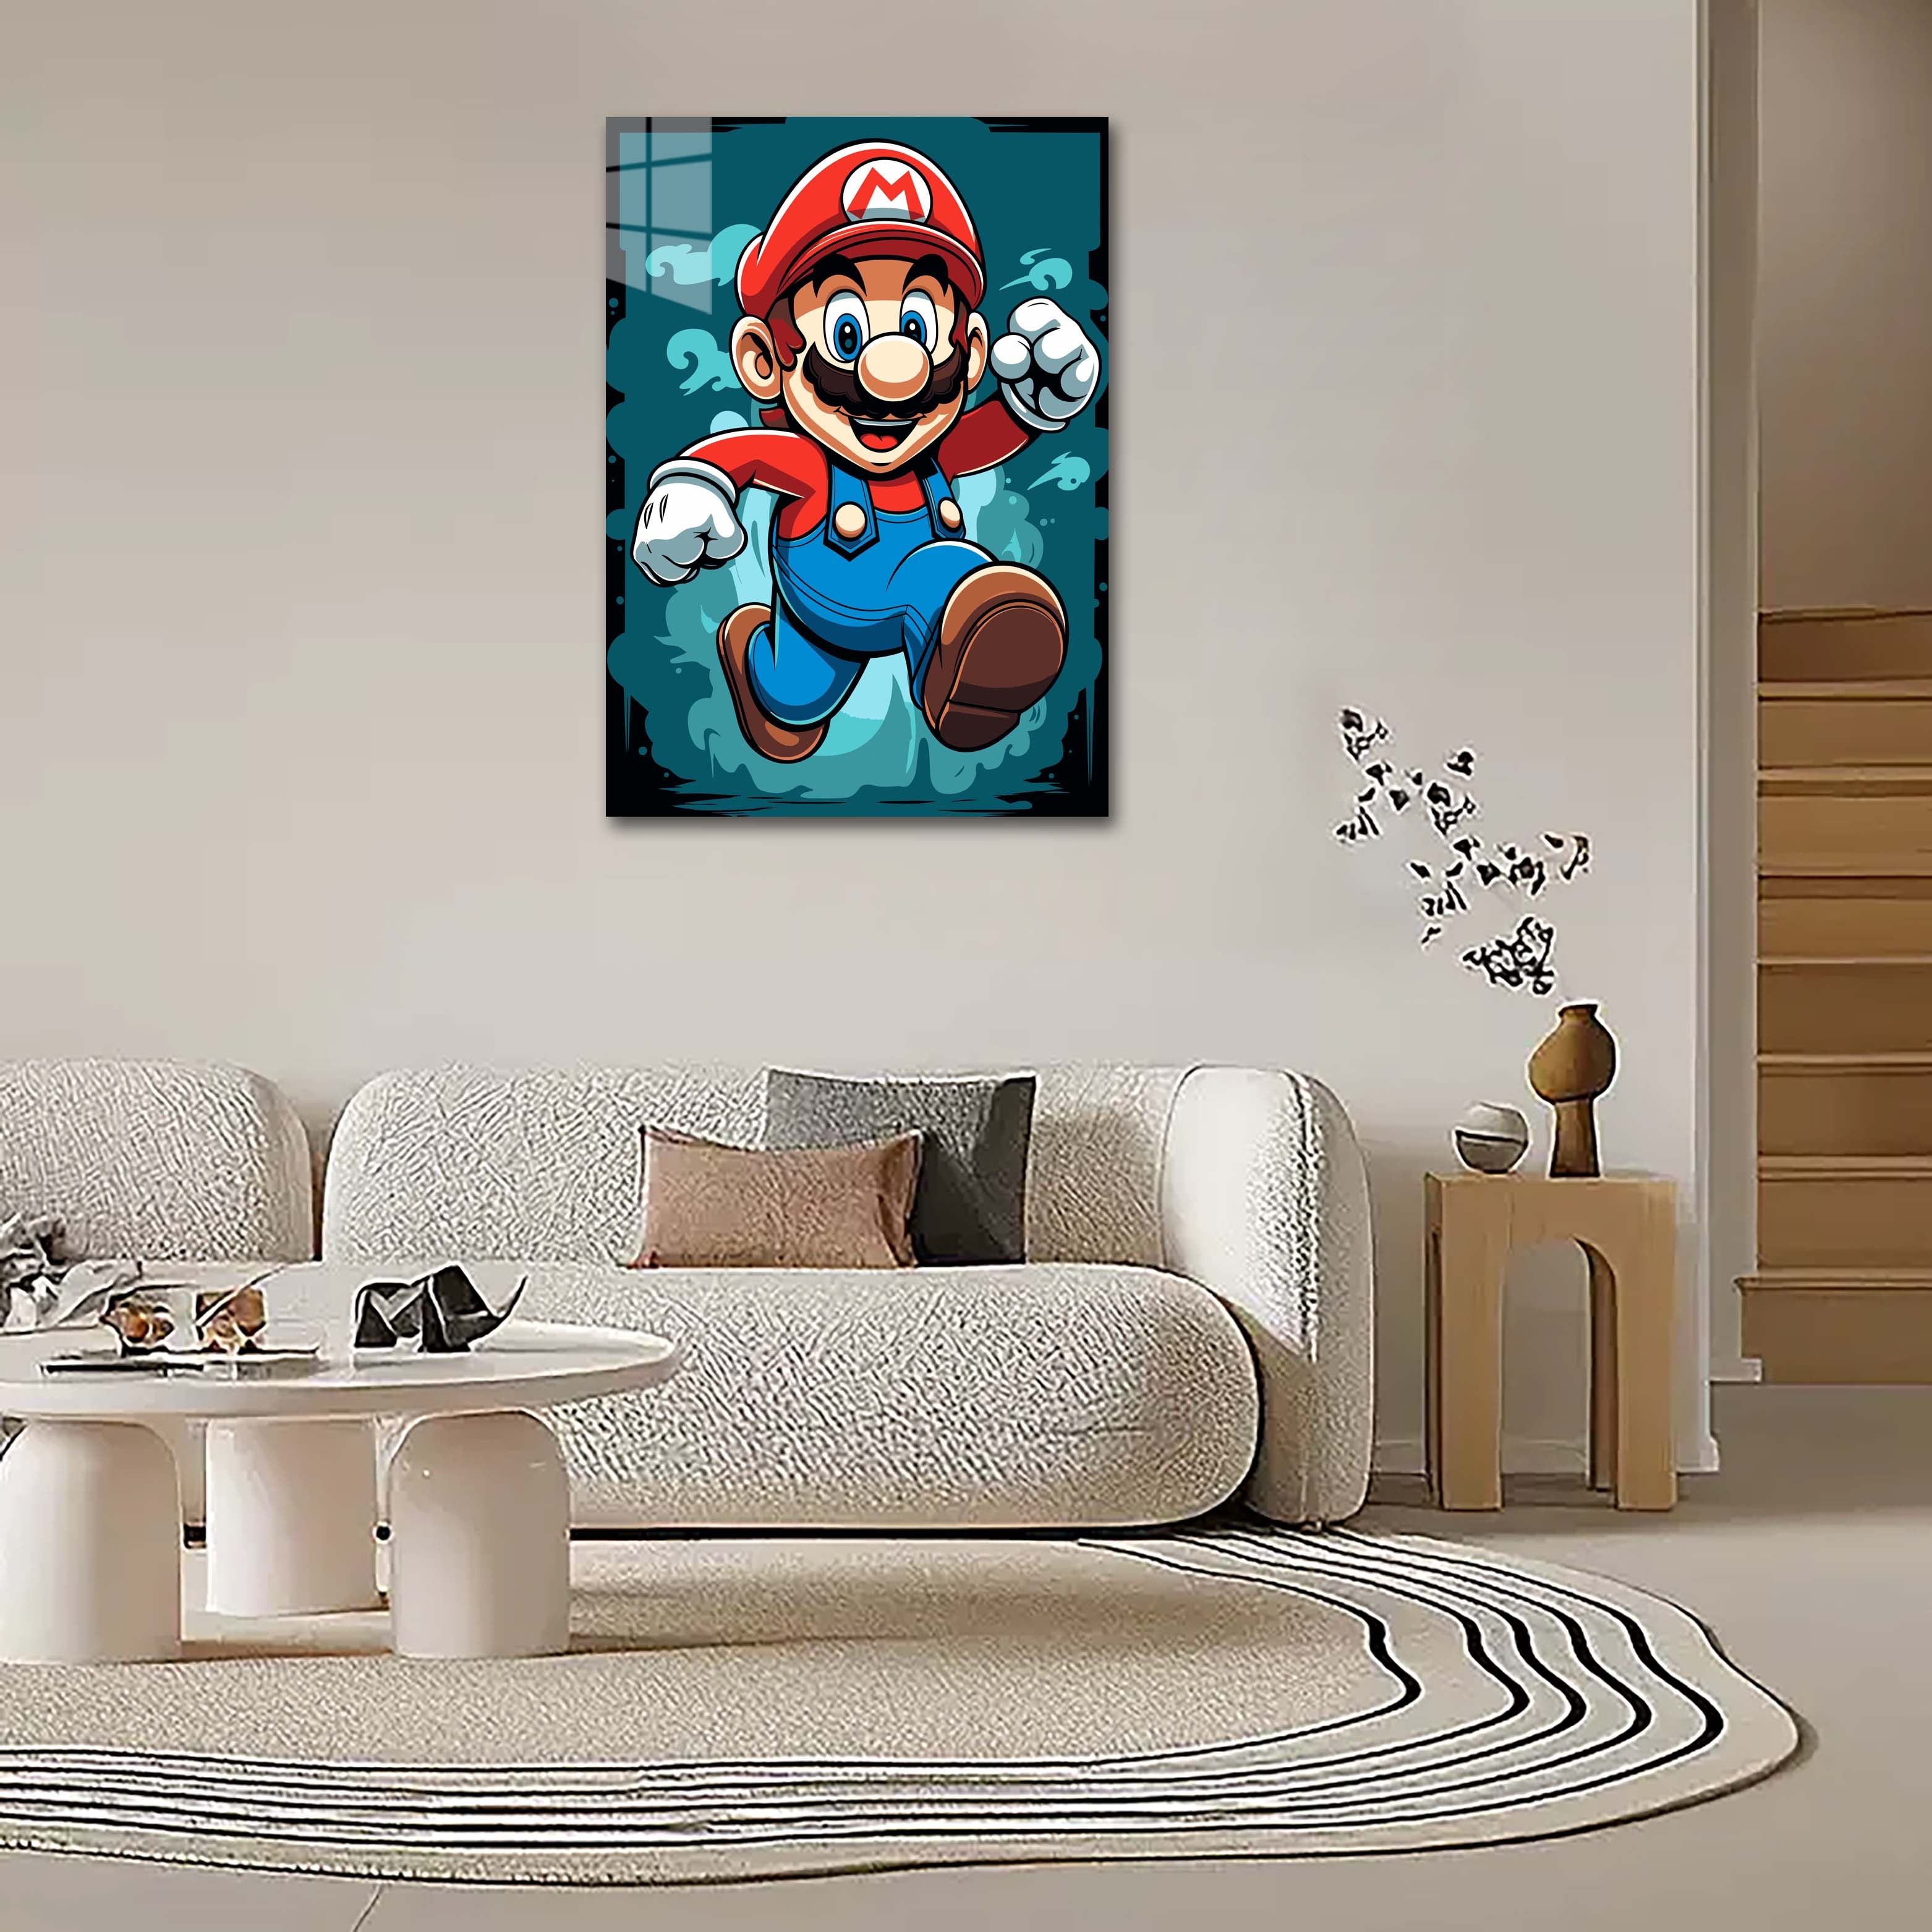 Mario Bros-designed by @WATON CORET